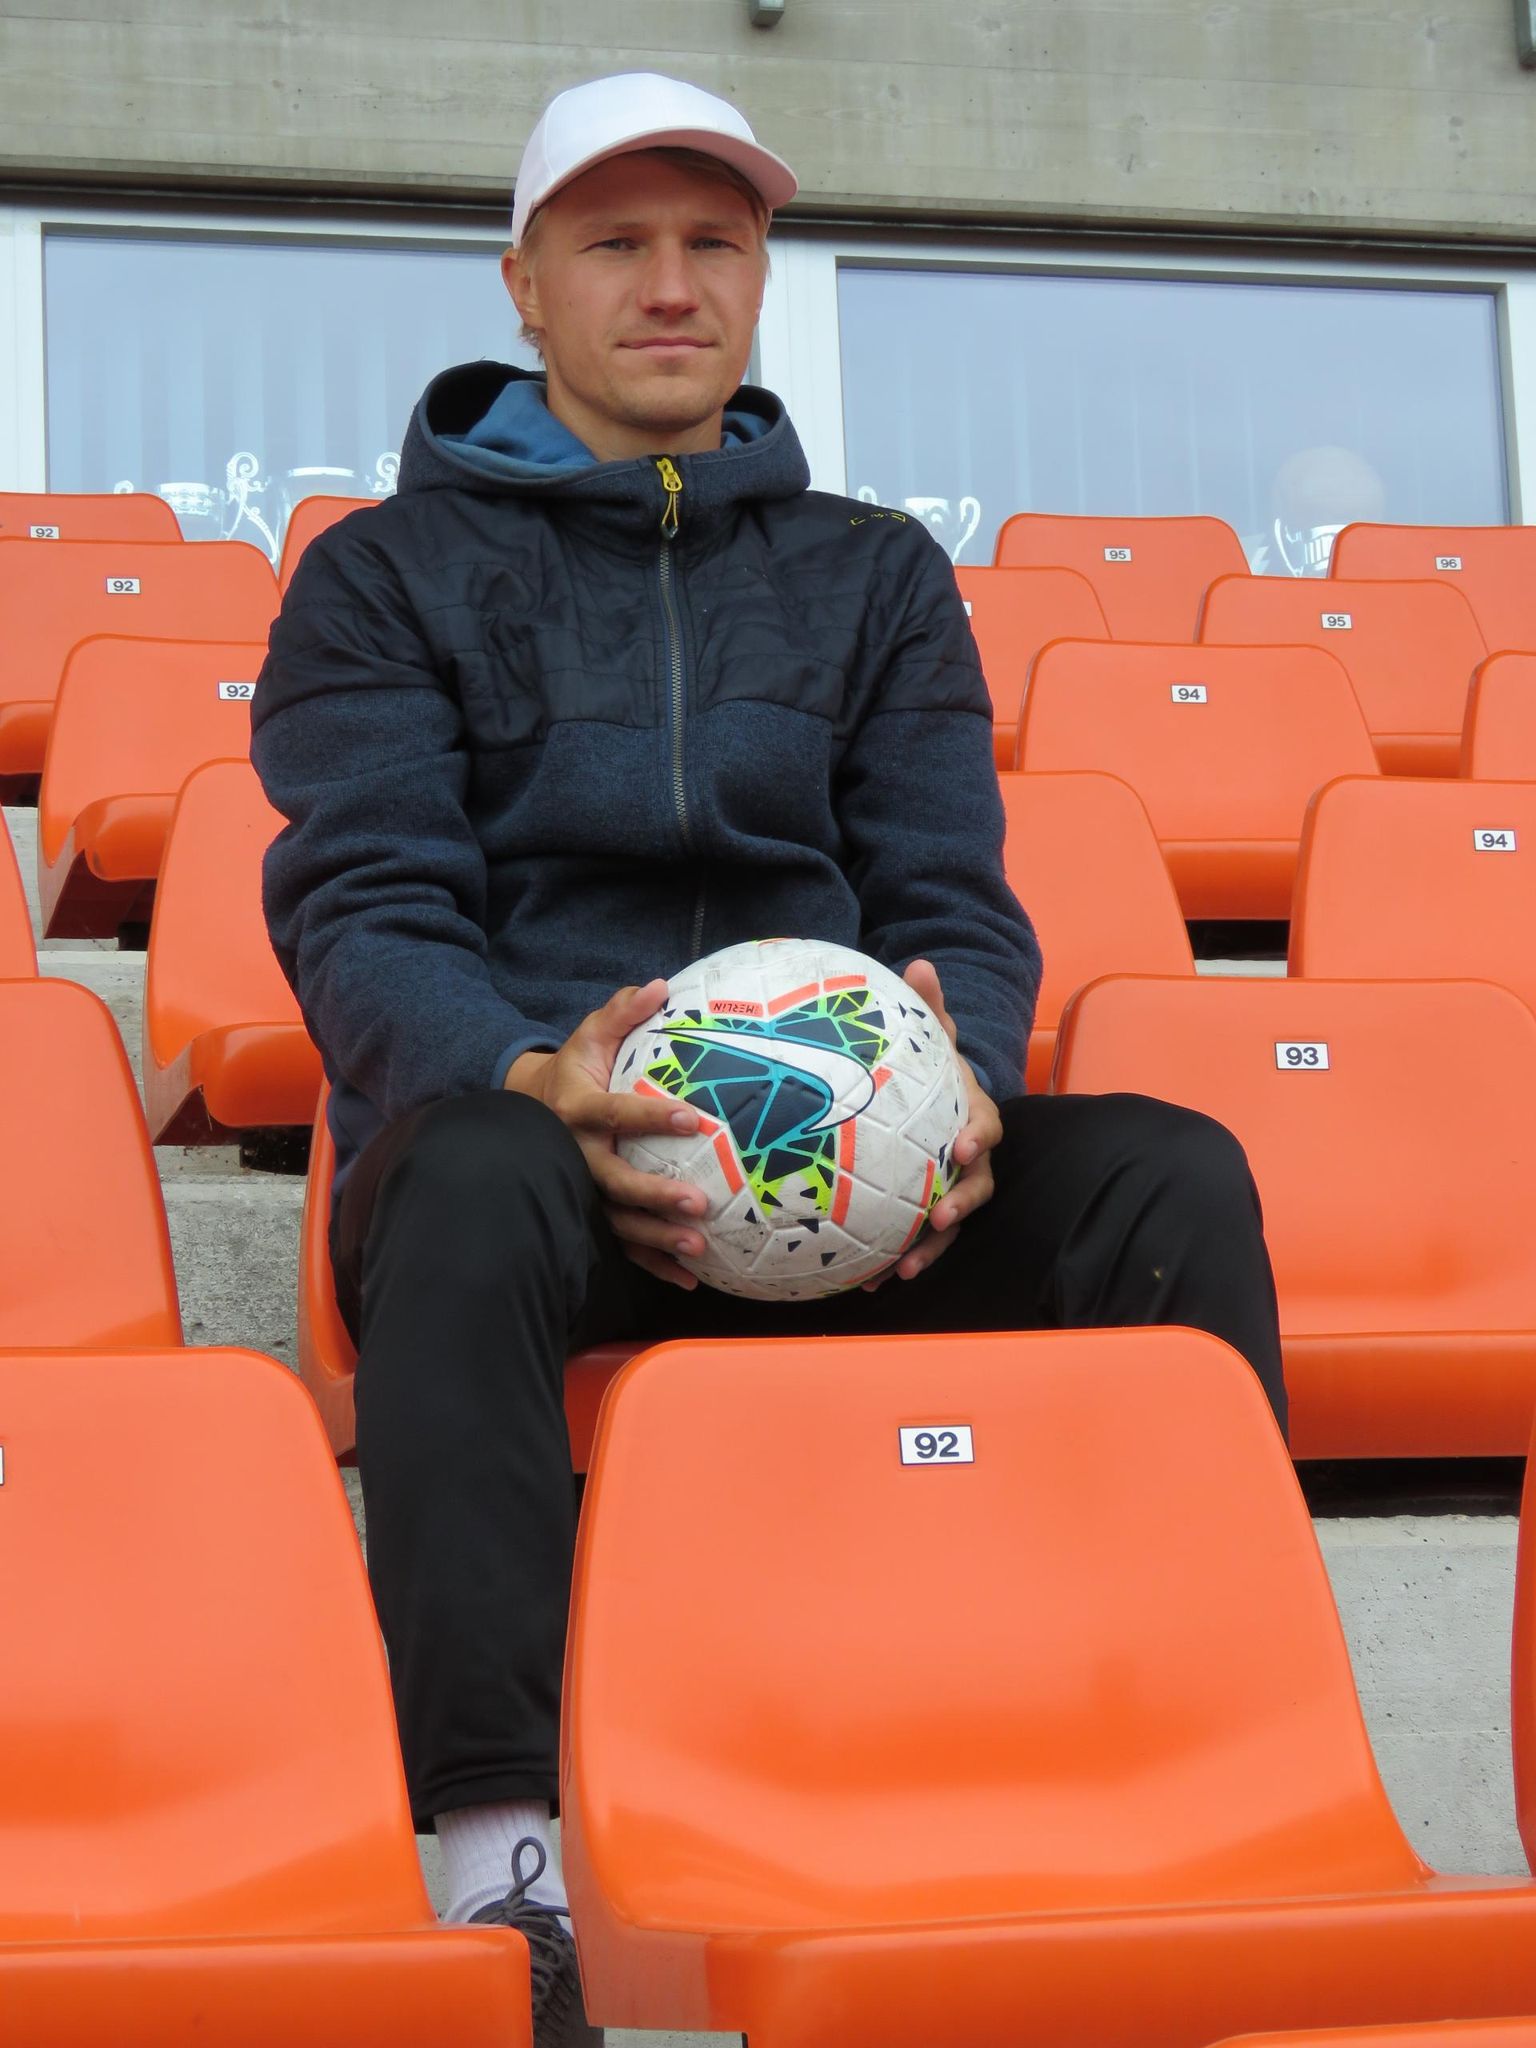 Jalgpalliklubi FC Otepää juhatuse liige treener Martin Teder ütleb, et jalgpall on lahedam ja ägedam kui miski muu spordiala.
MAARIUS SUVISTE